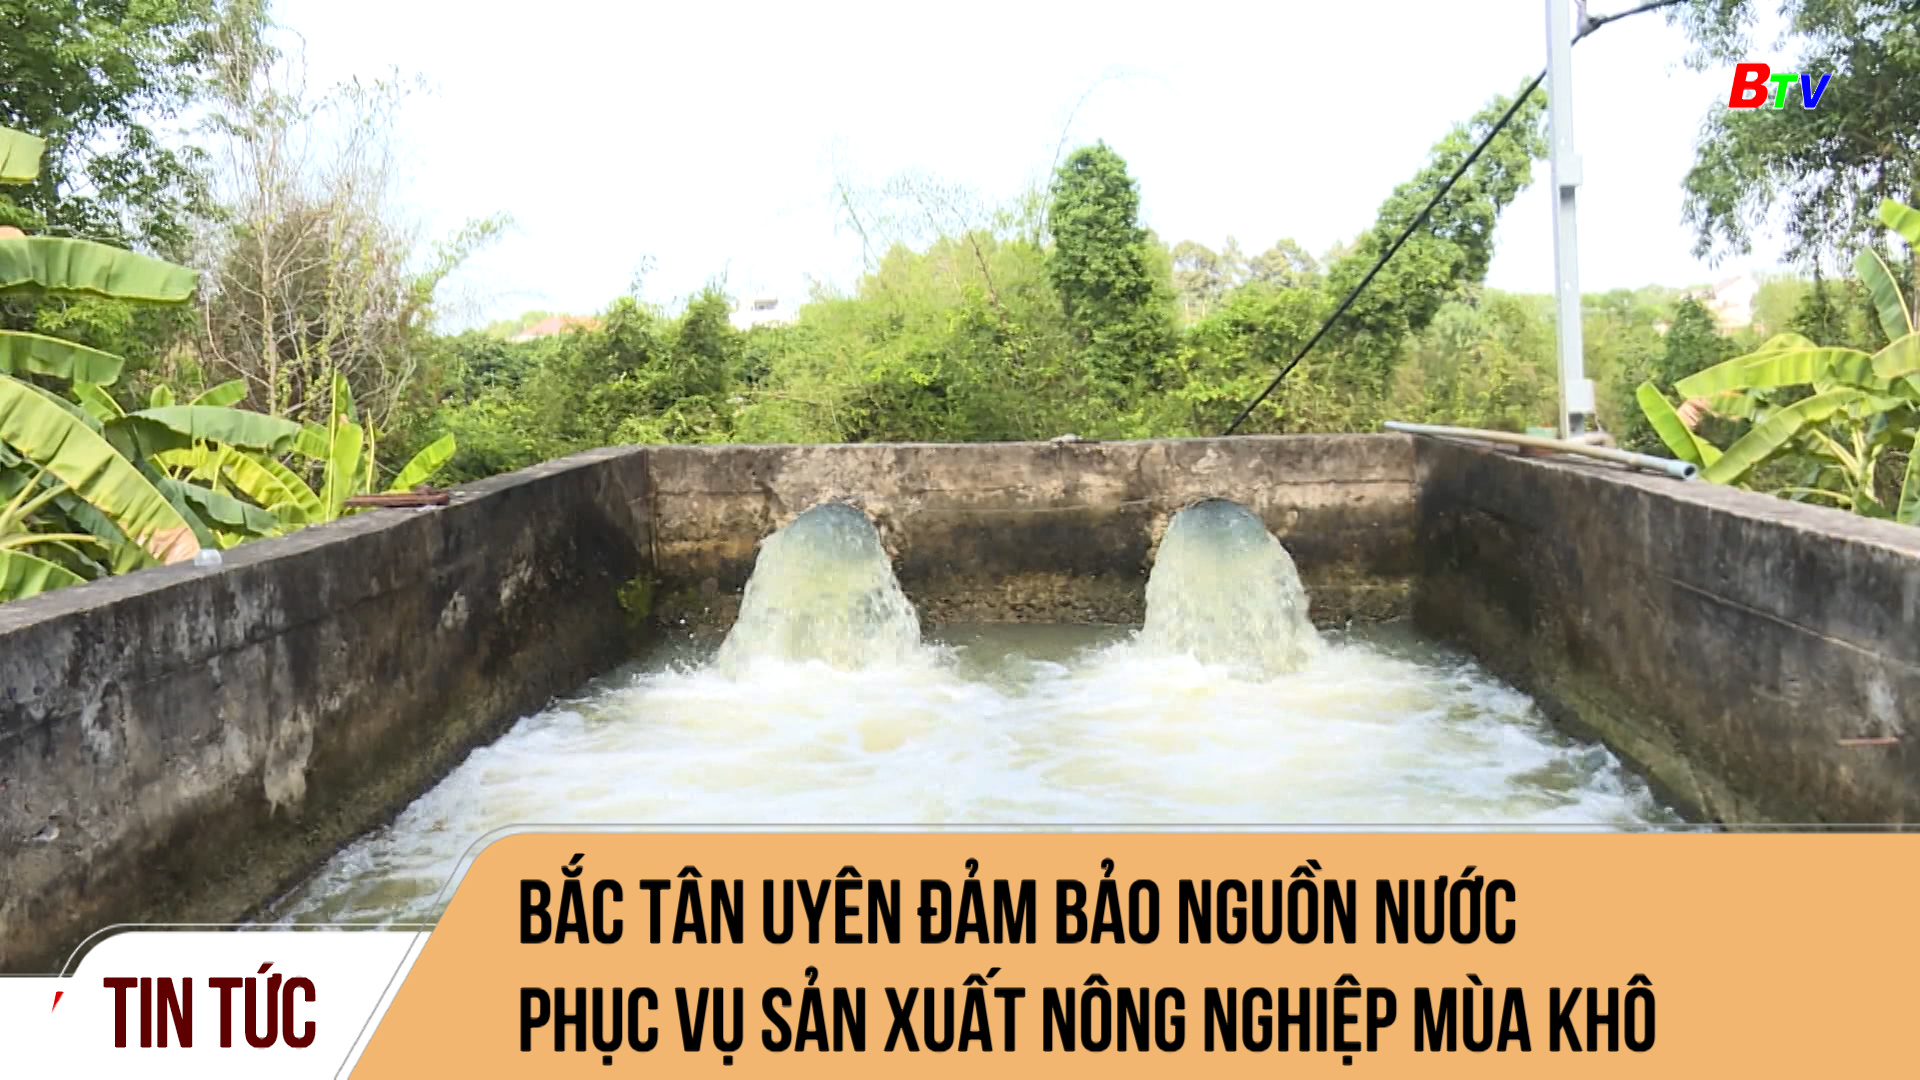 Bắc Tân Uyên đảm bảo nguồn nước phục vụ sản xuất nông nghiệp mùa khô